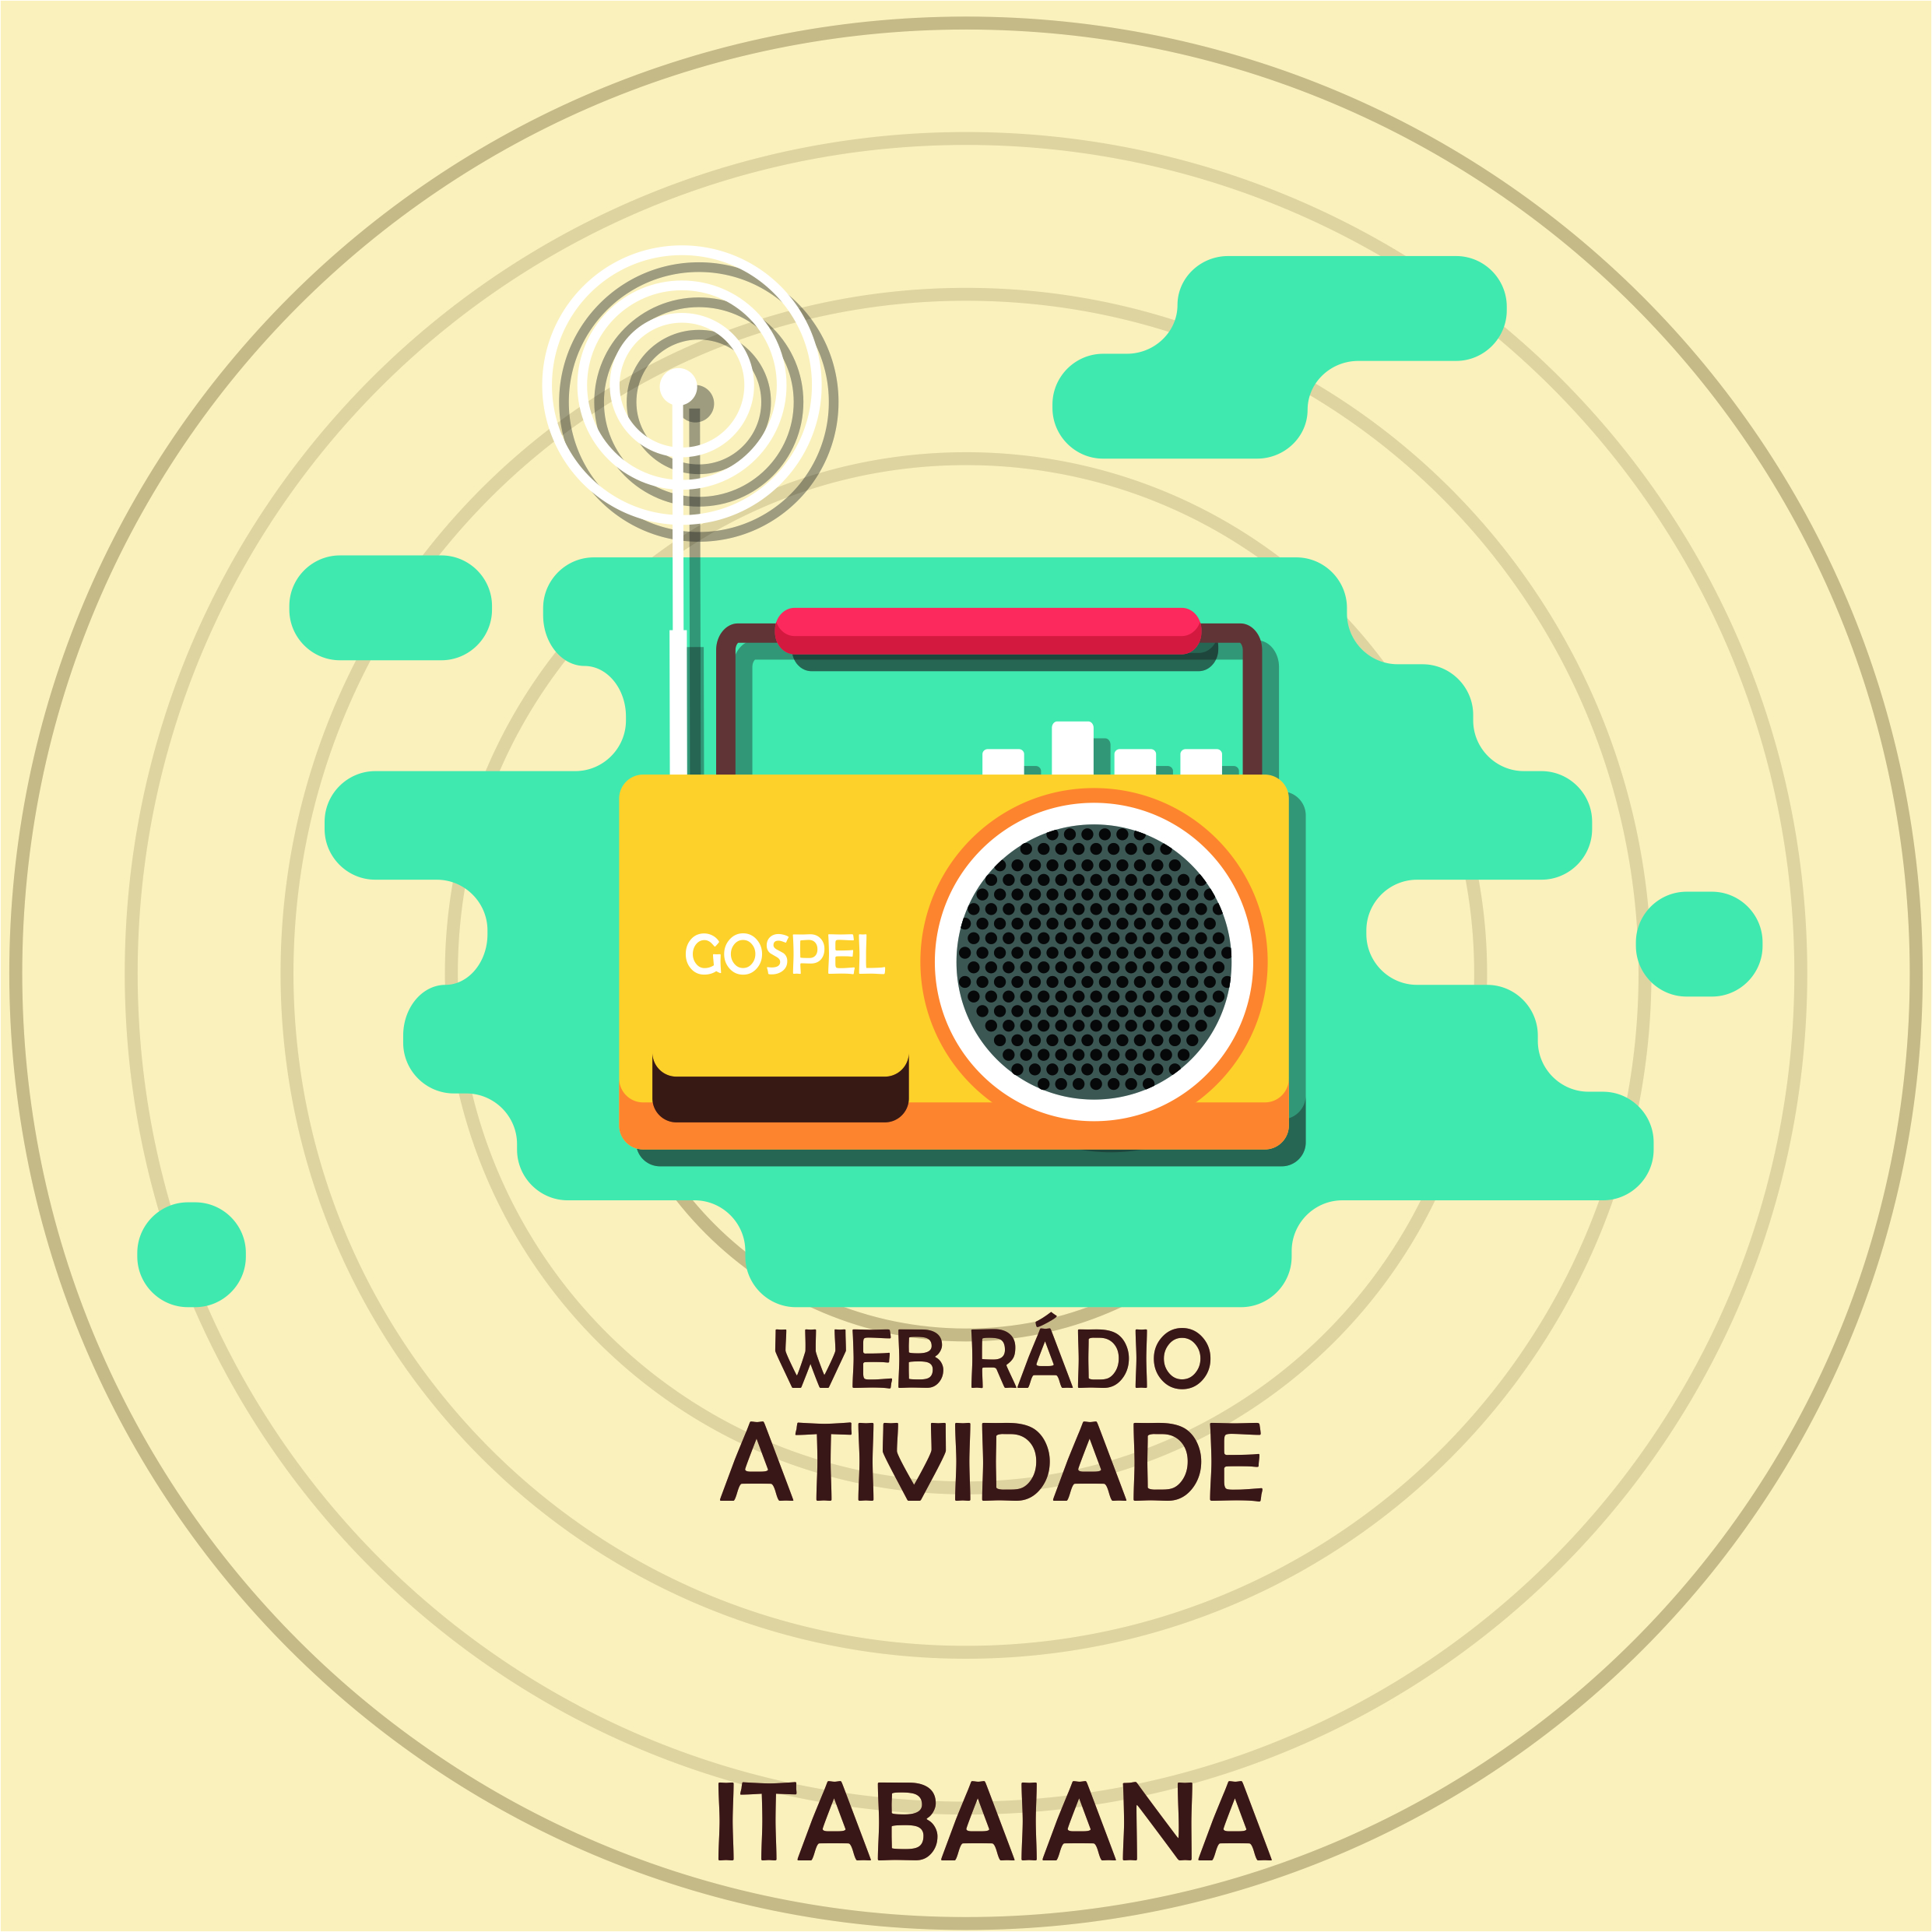 Web Rádio Atividade Itabaiana Só as melhores Gospel